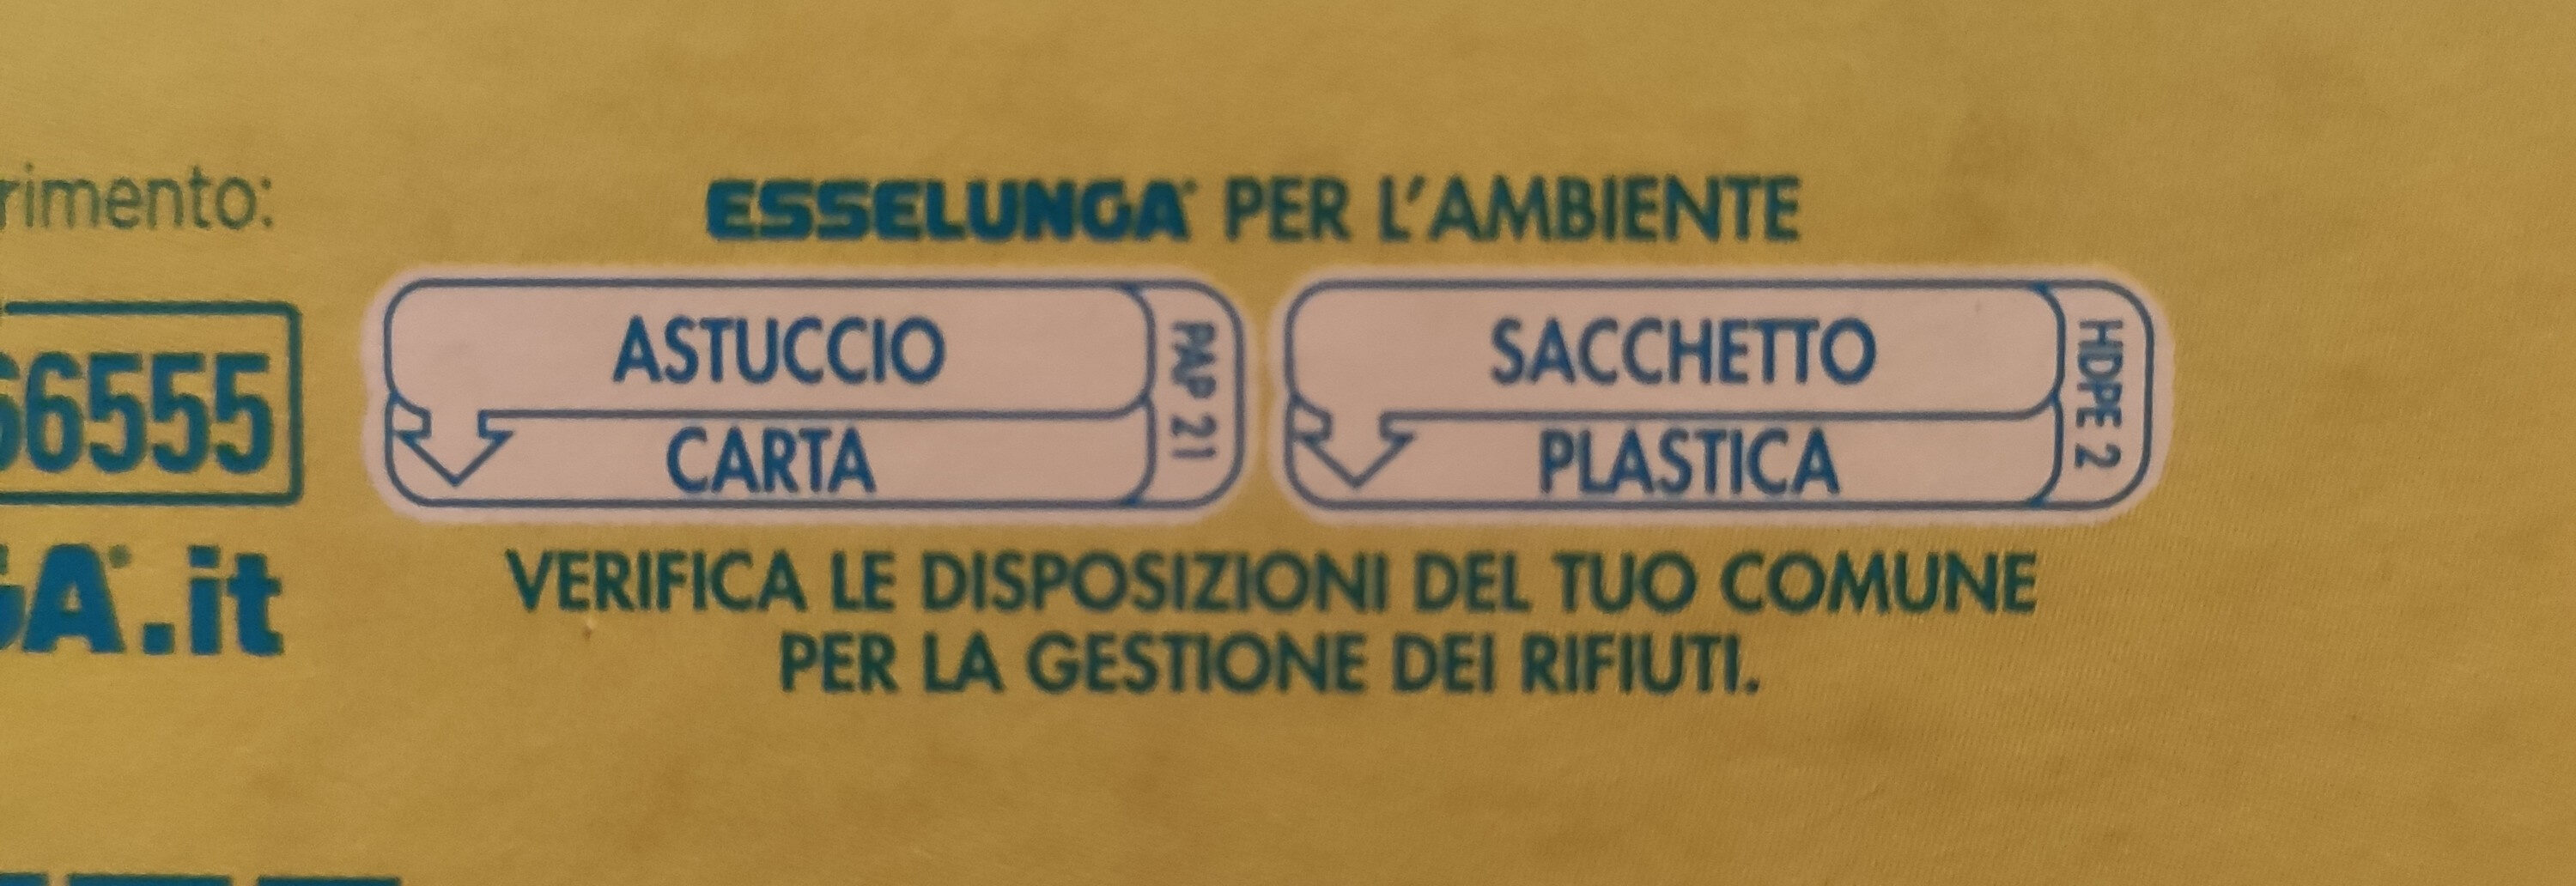 Fiocchi di frumento - Istruzioni per il riciclaggio e/o informazioni sull'imballaggio